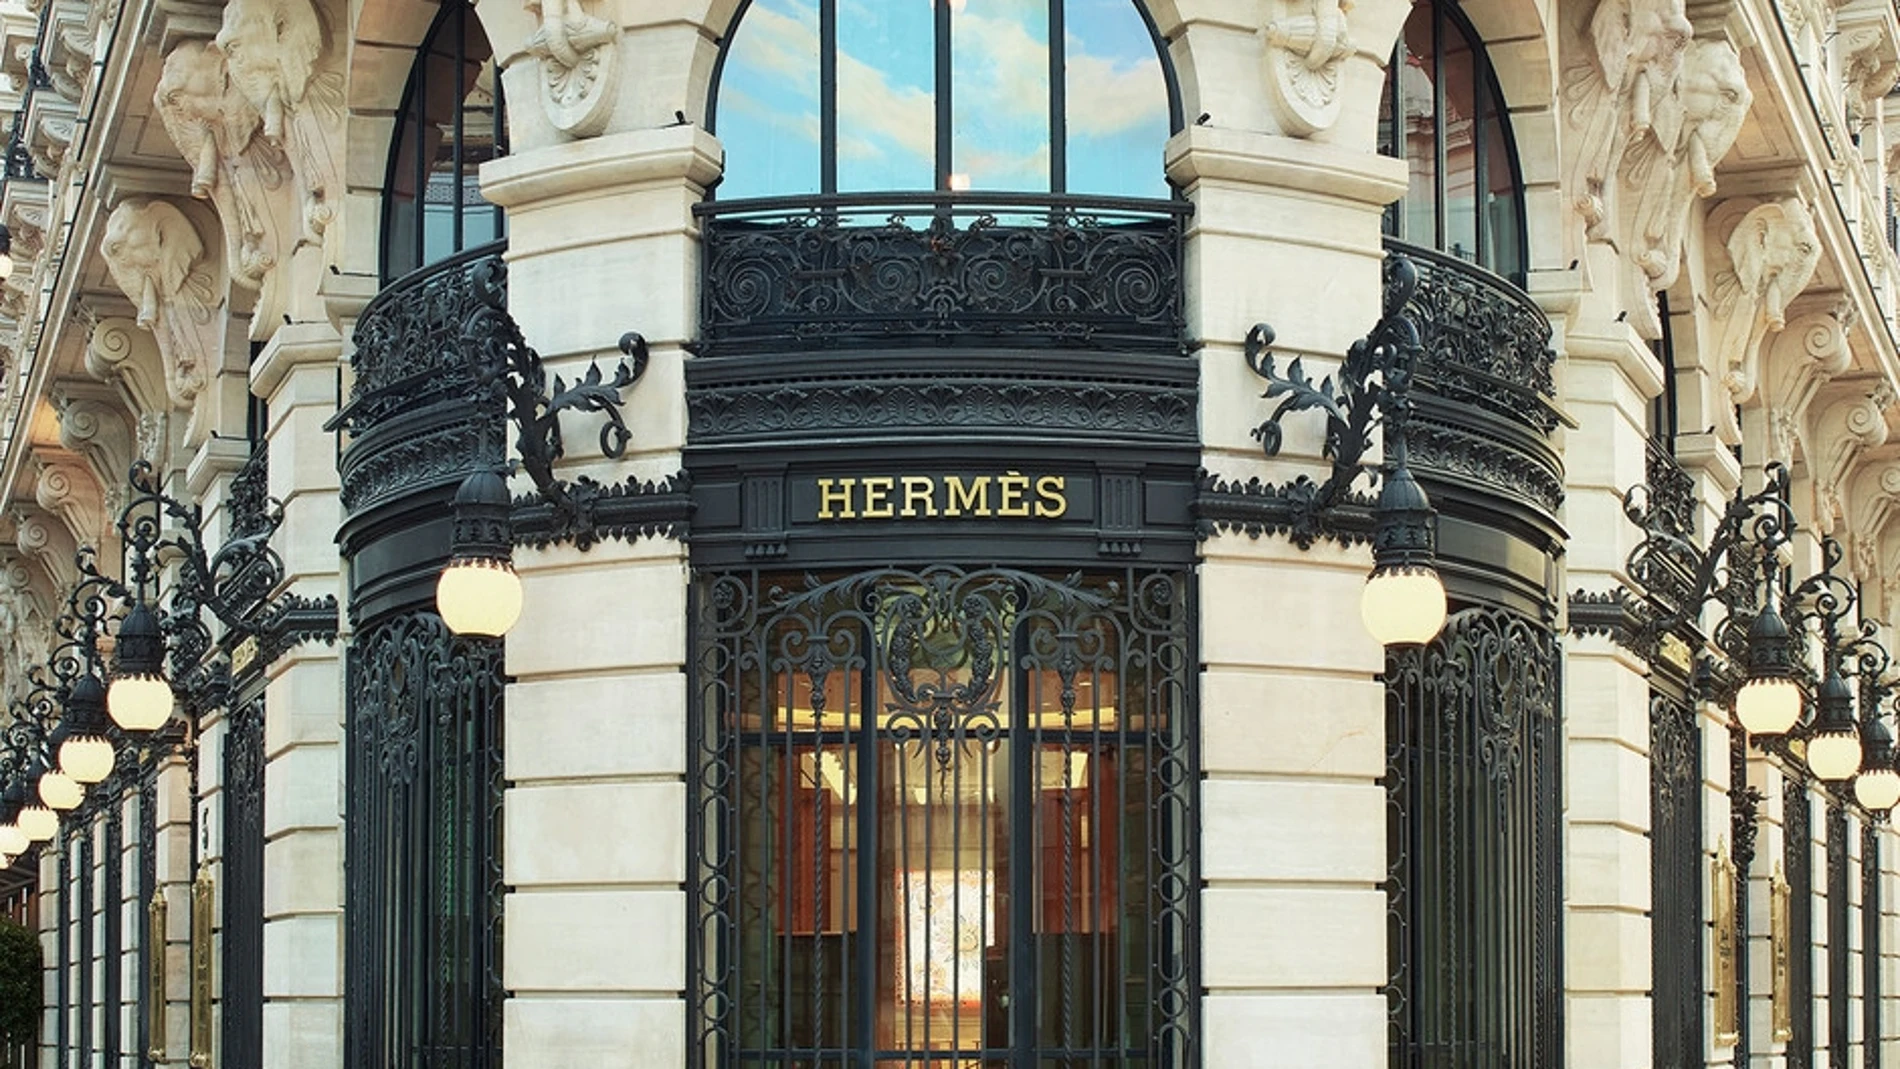 Hermès Galería Canalejas